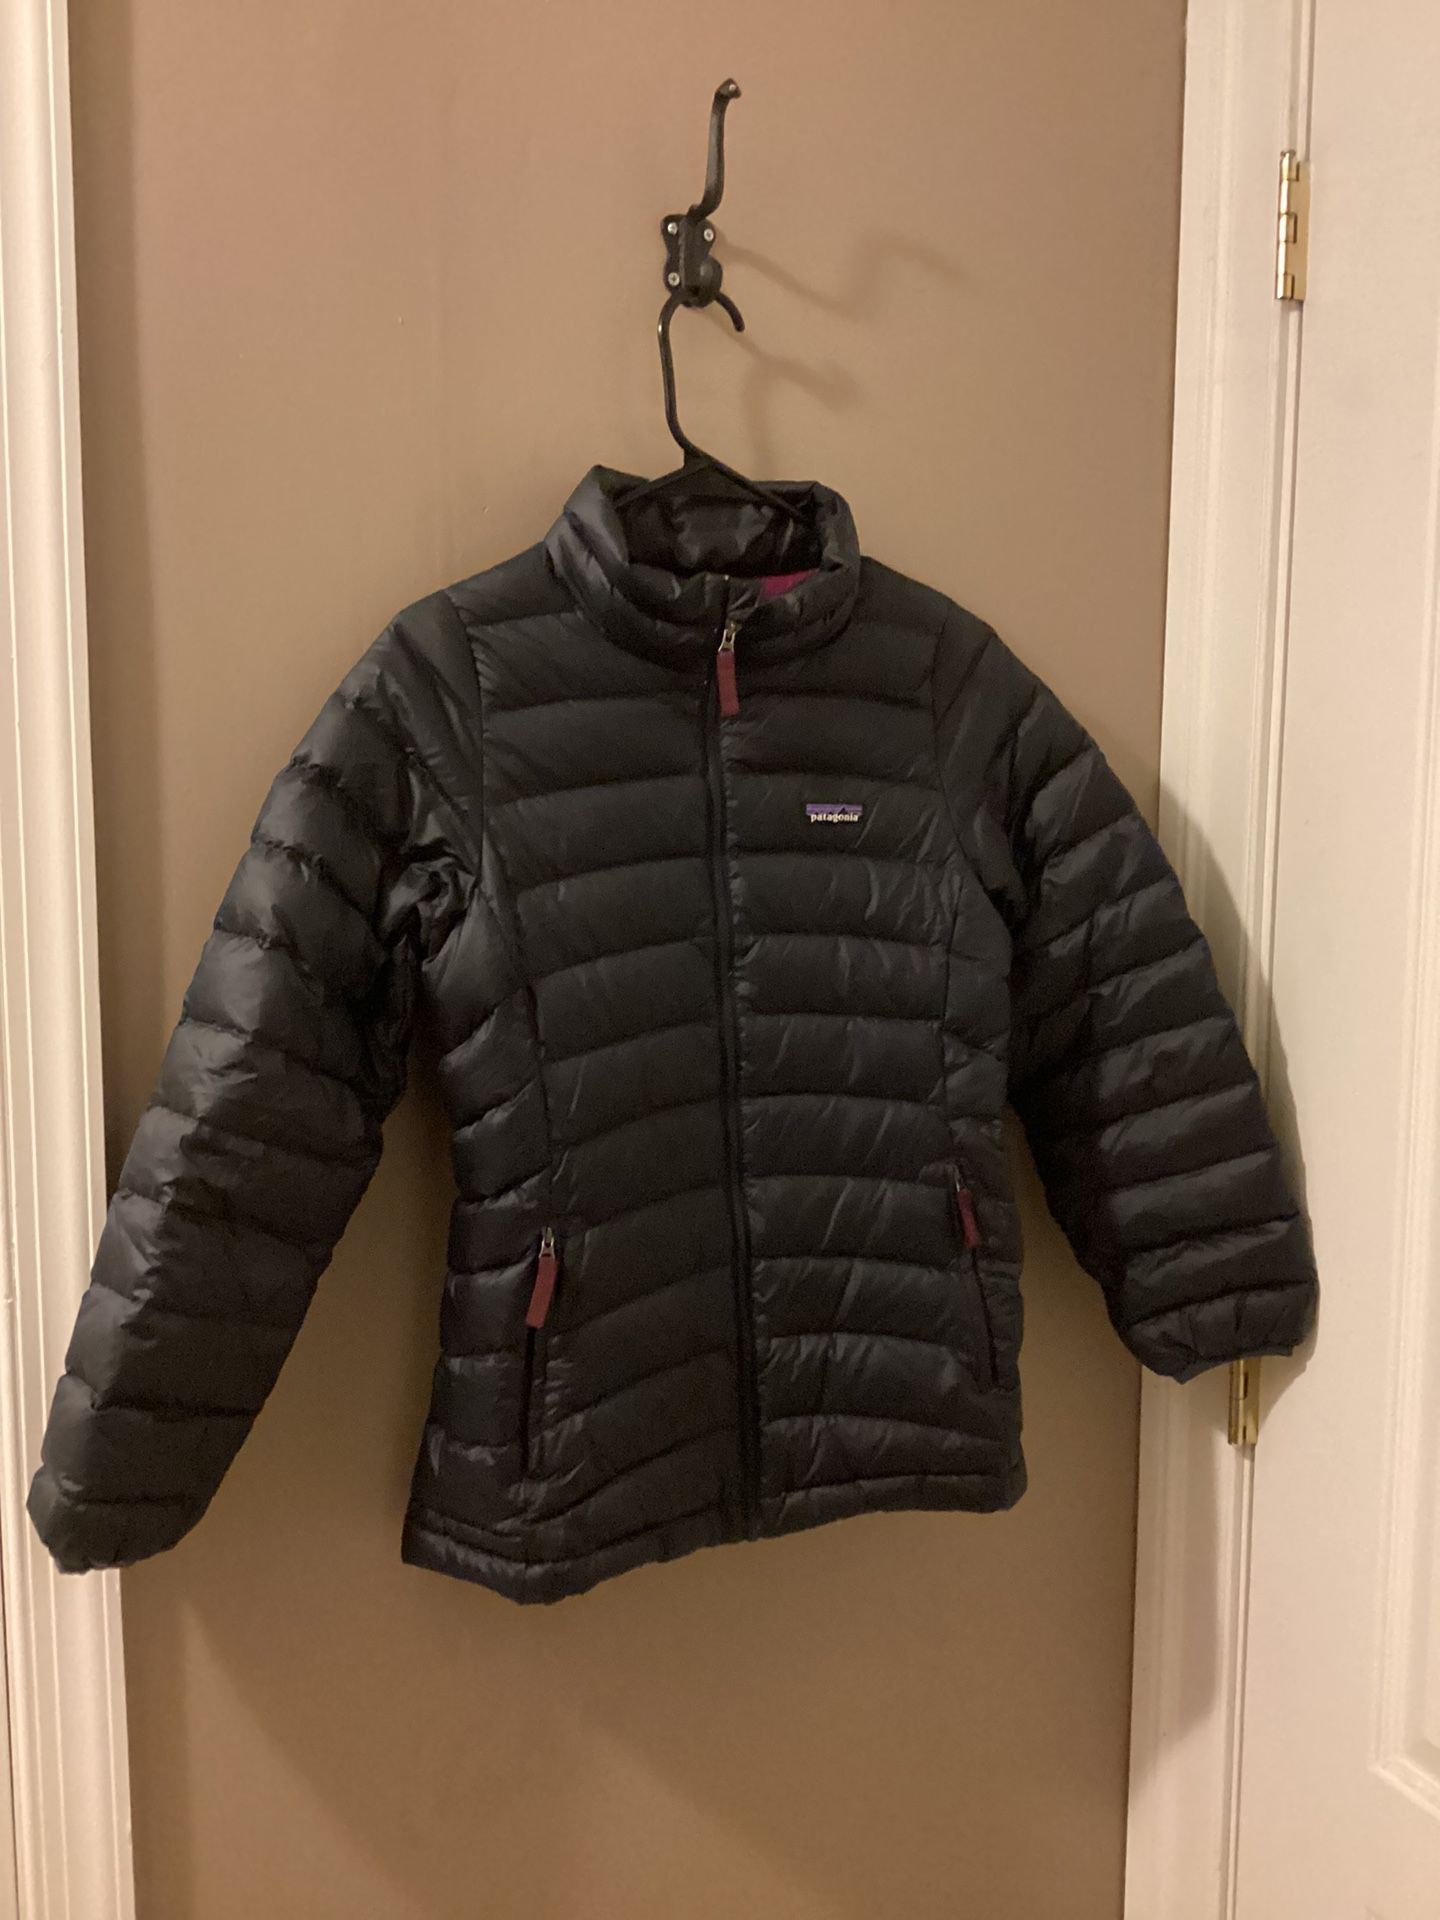 Patagonia Kids puffer jacket size XL/14